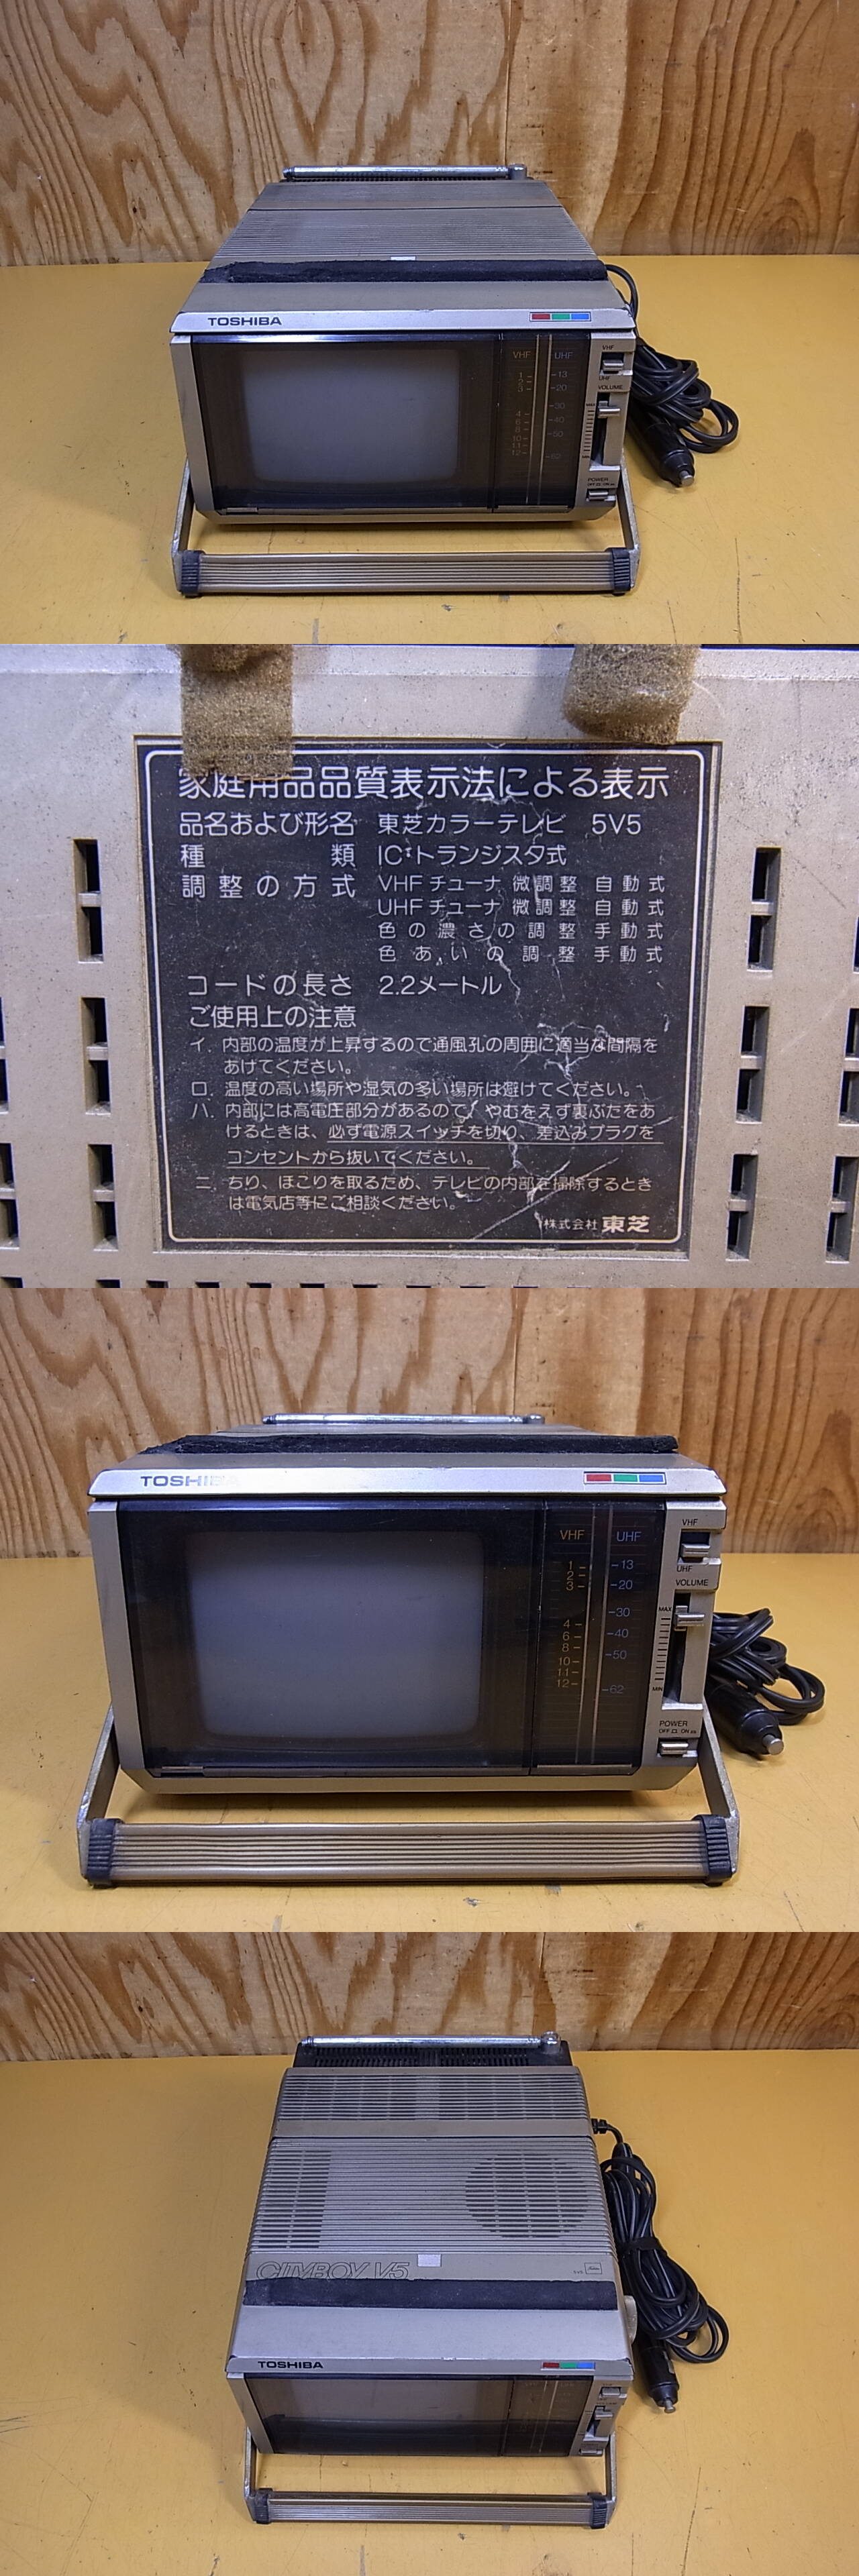 くらしを楽しむアイテム V 047 東芝 TOSHIBA ポータブルカラーテレビ